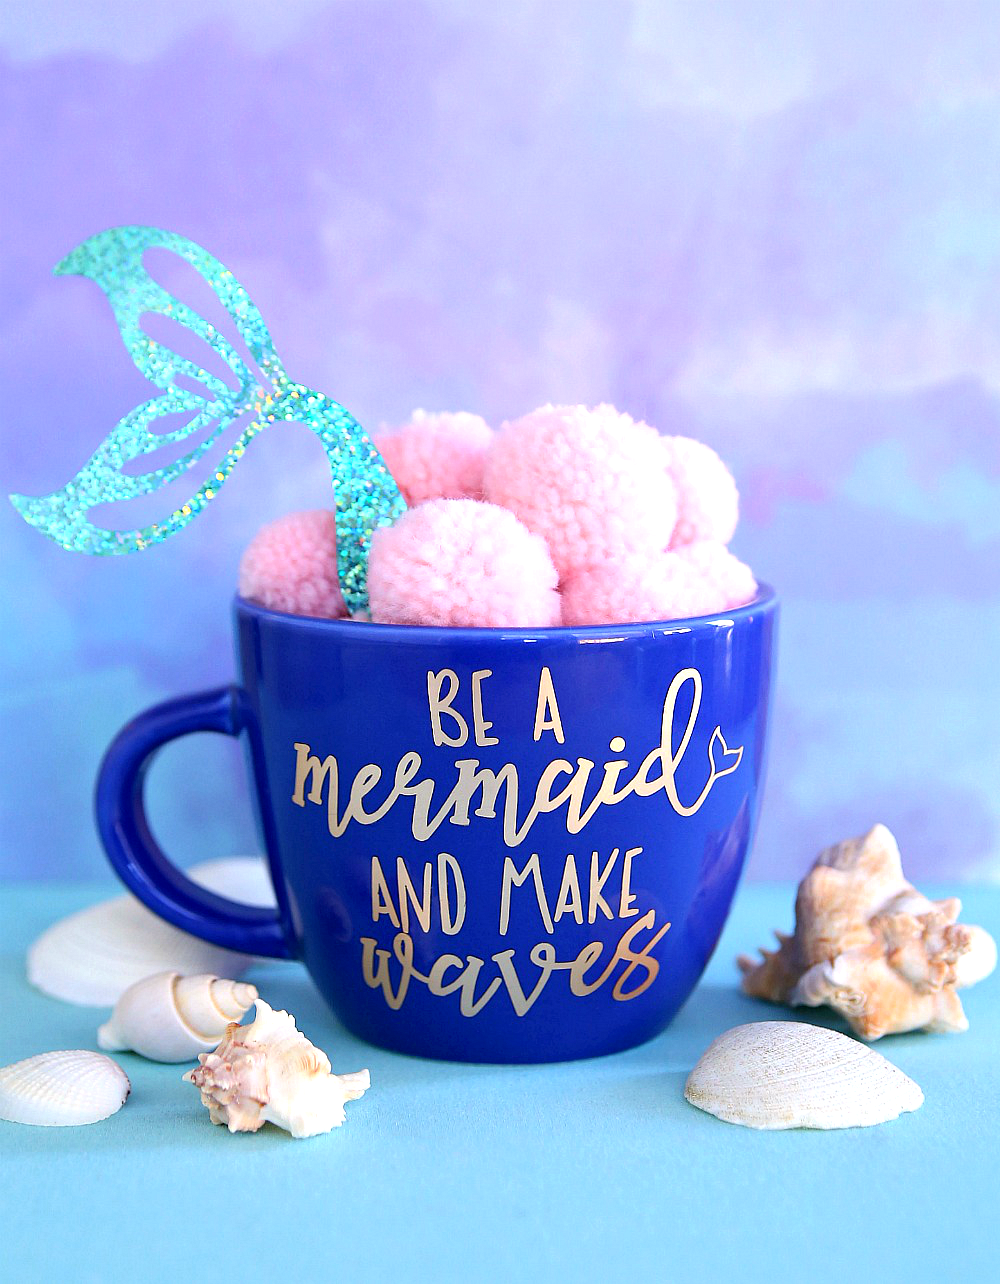 Be a mermaid and Make Waves mug using free cut file